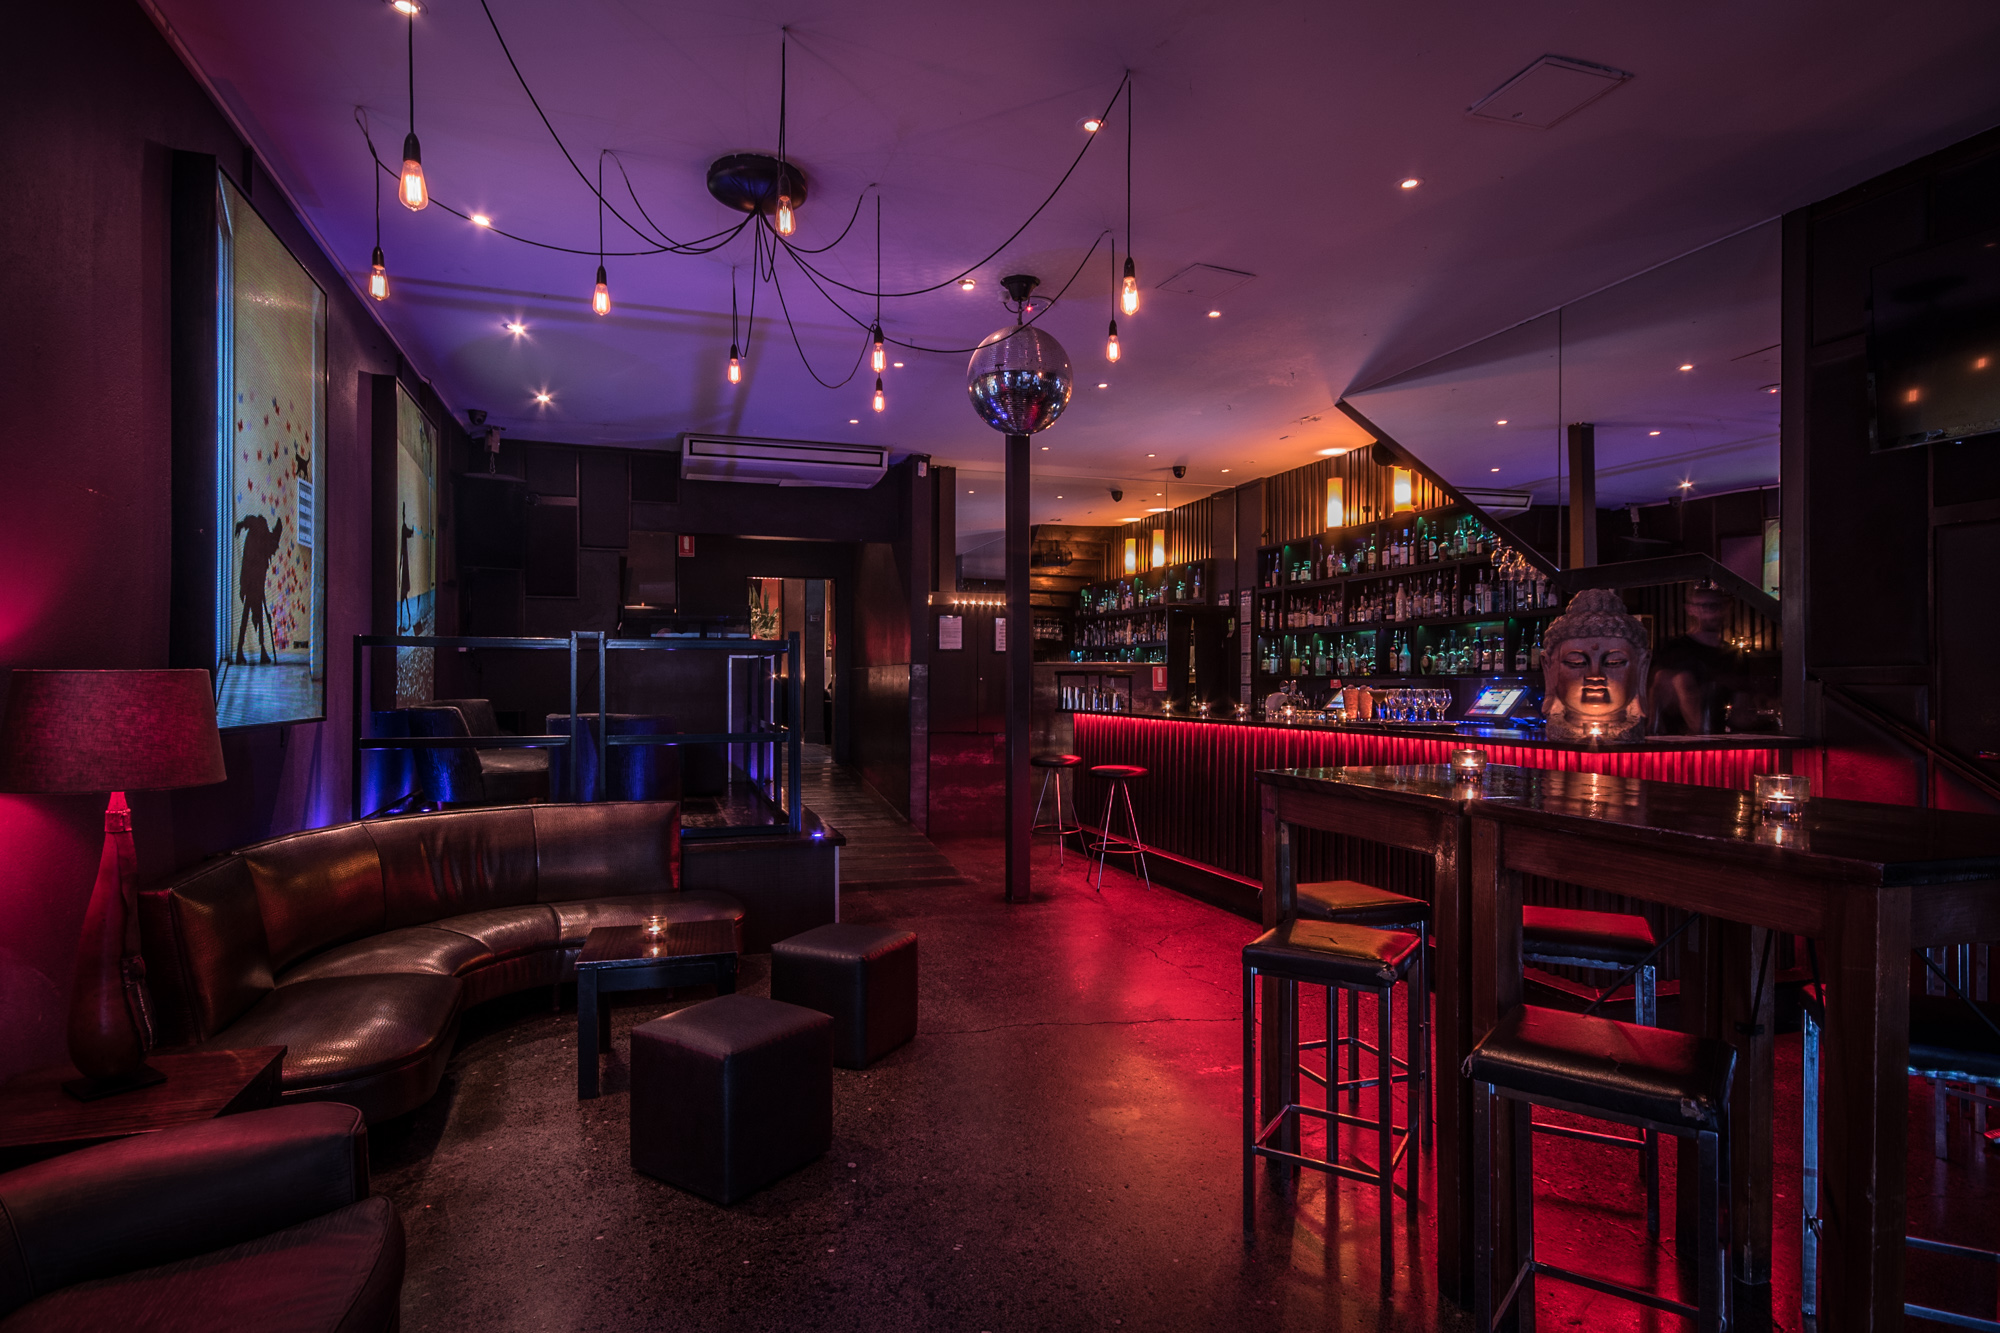 The Lounge shared bar